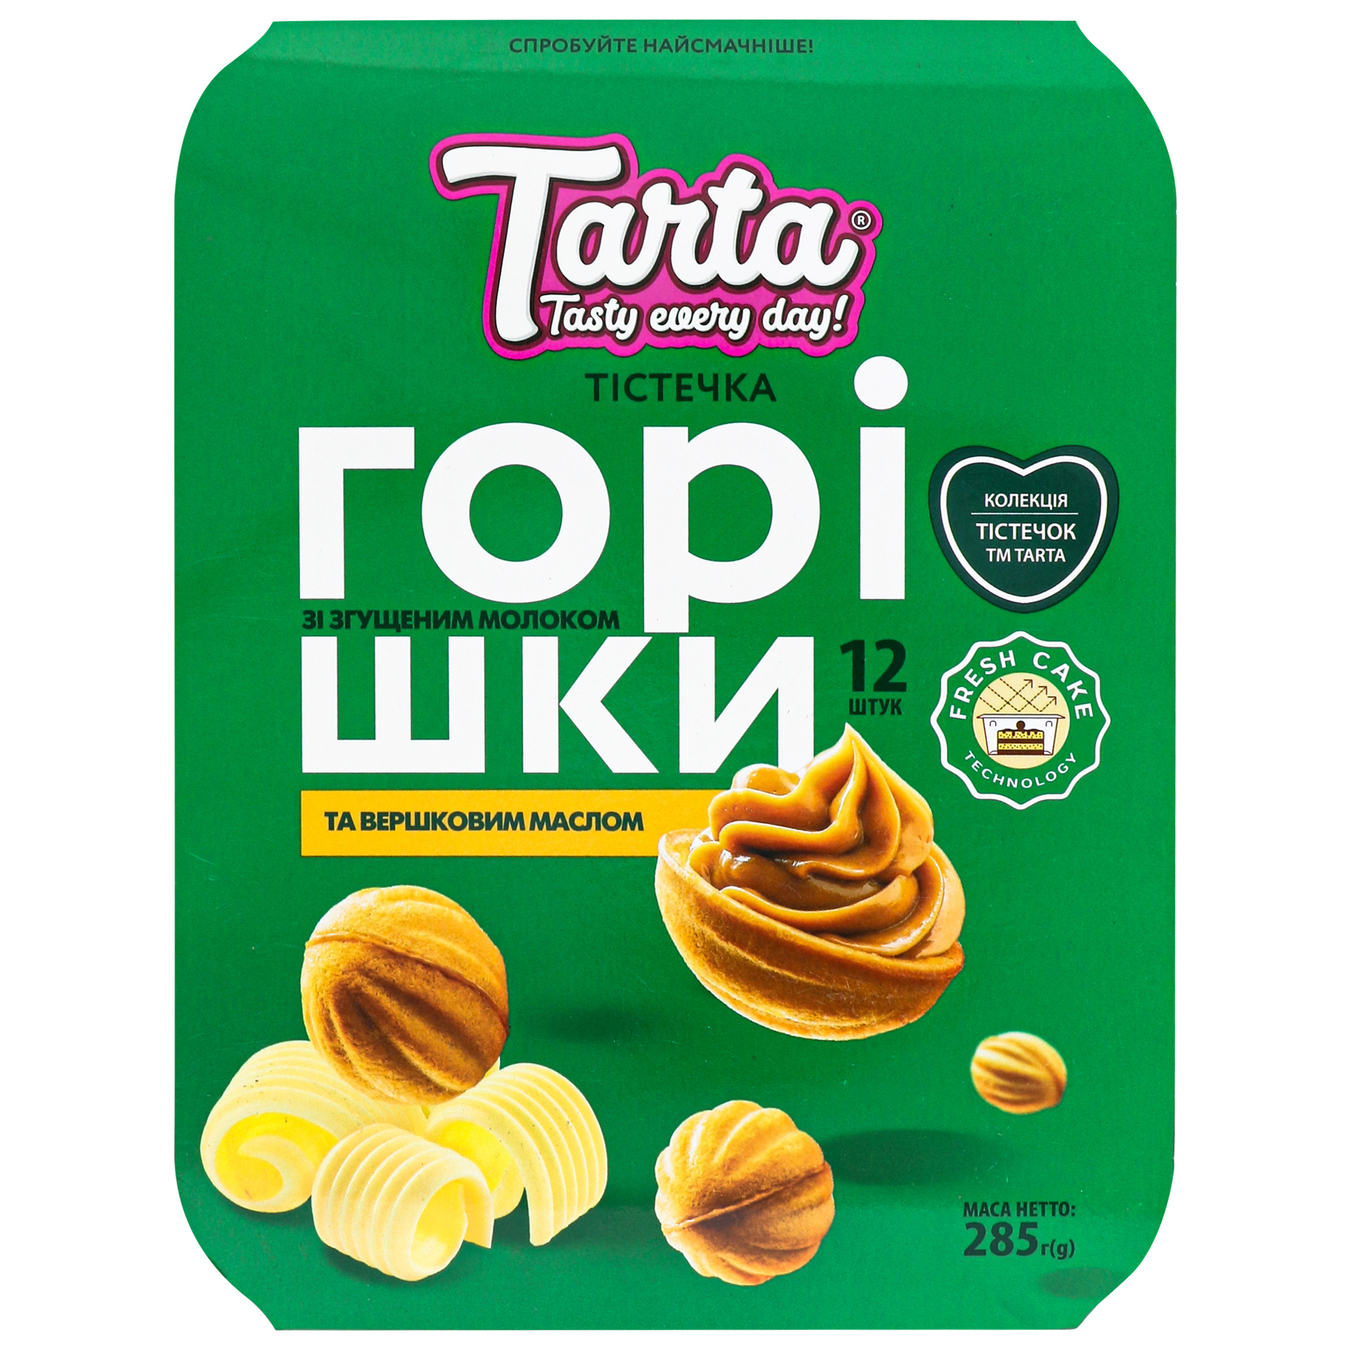 Пирожные Tarta Орешки со сгущенкой и сливочным маслом 285г